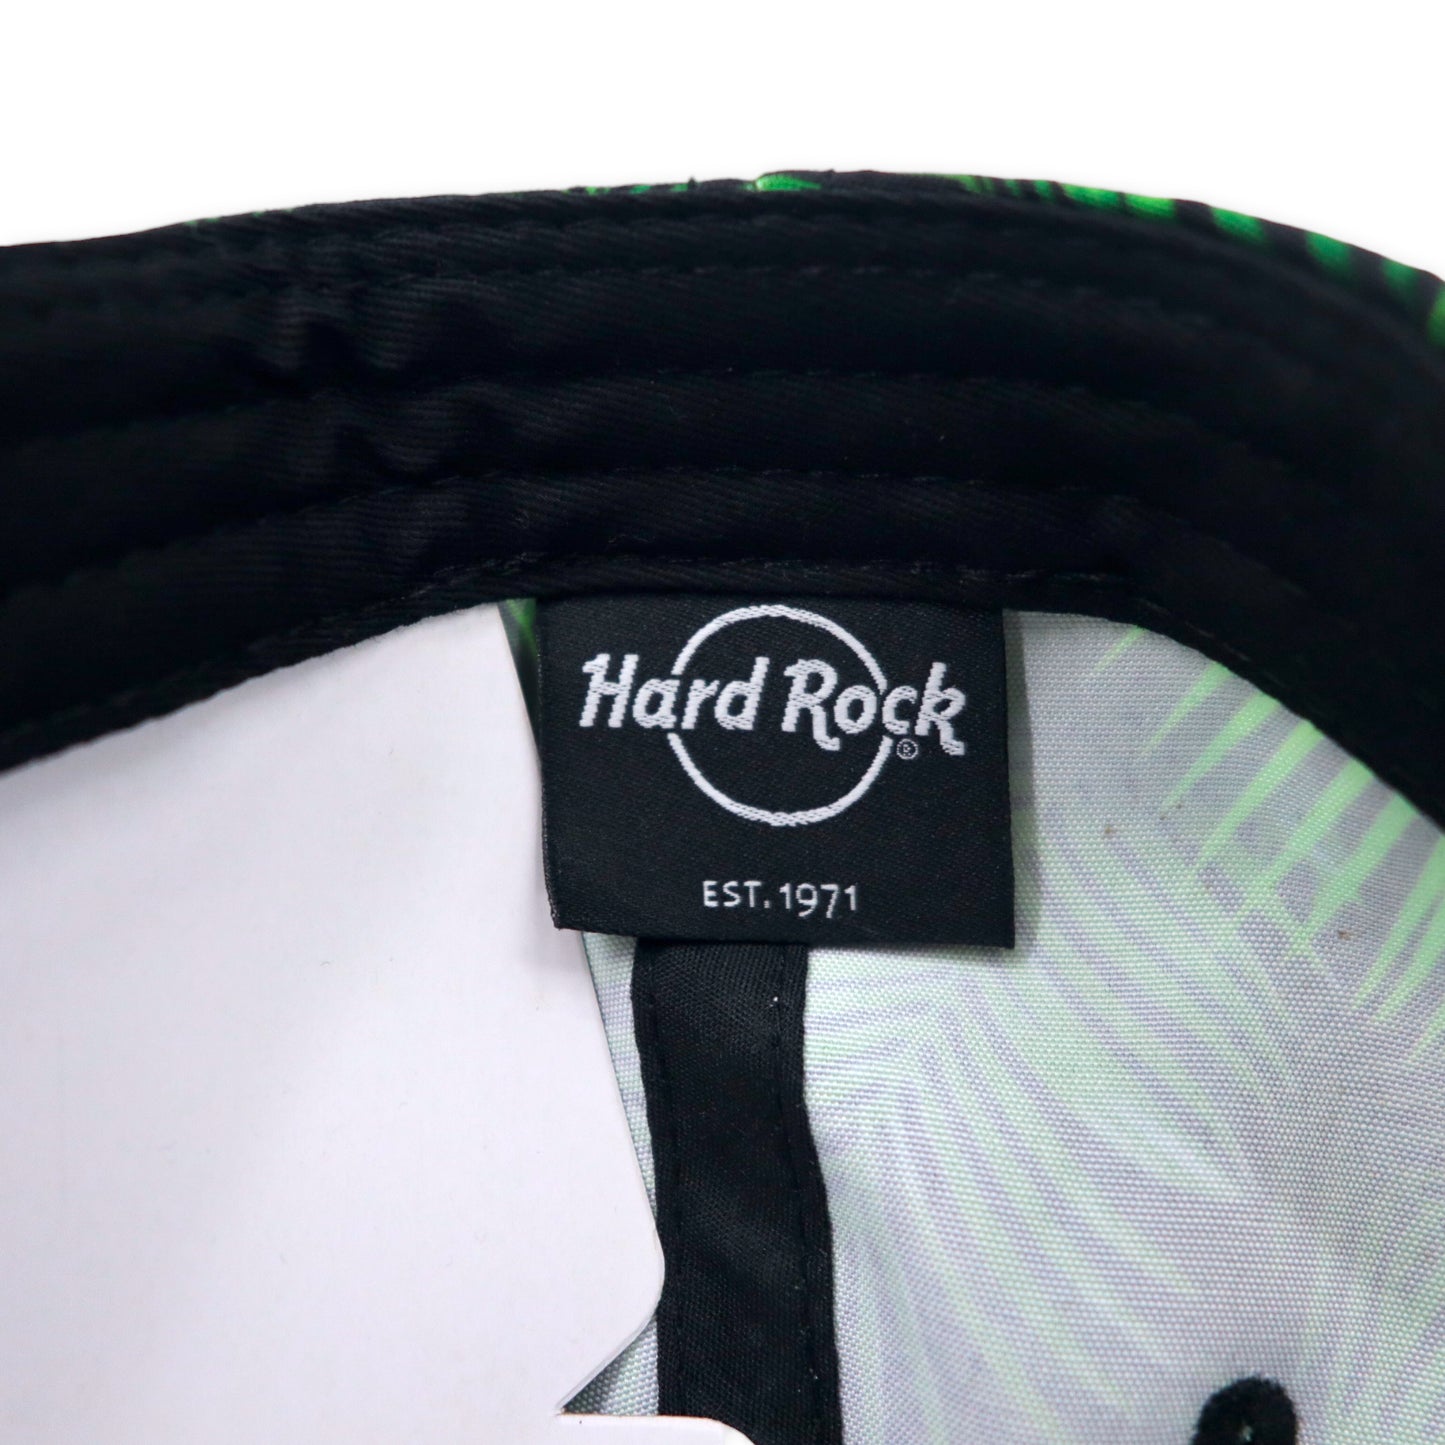 Hard Rock CAFE スナップバック ベースボールキャップ ONE ブラック 総柄 ボタニカル ロゴ刺繍 GUAM USA 未使用品